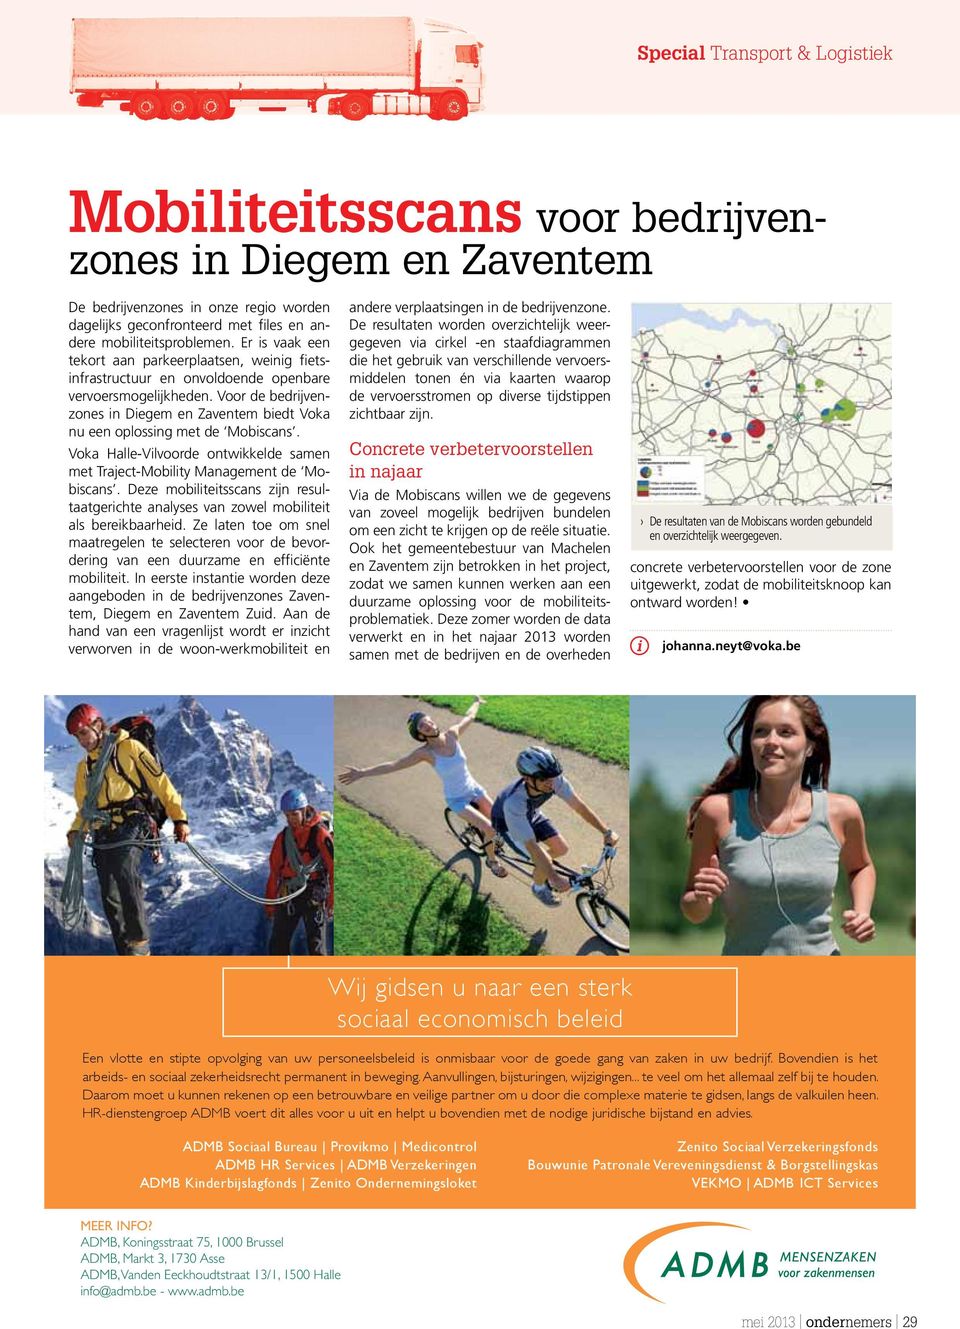 Voor de bedrijvenzones in Diegem en Zaventem biedt Voka nu een oplossing met de Mobiscans. Voka Halle-Vilvoorde ontwikkelde samen met Traject-Mobility Management de Mobiscans.